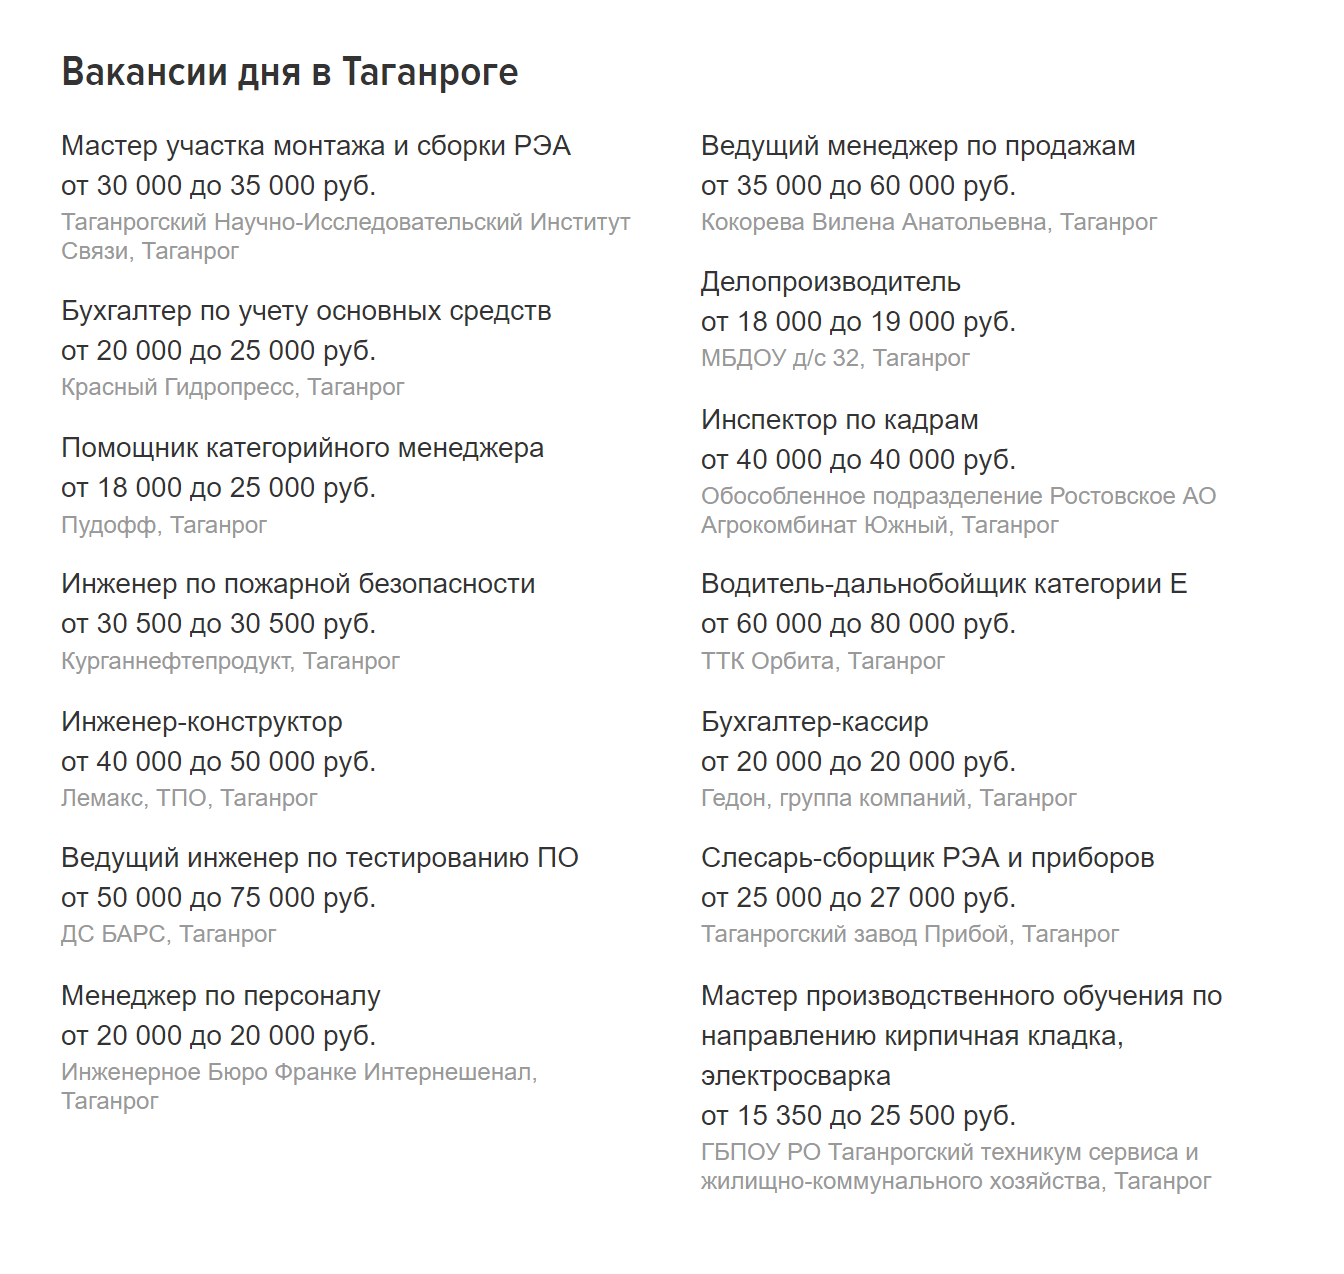 Средняя зарплата в Таганроге, если судить по вакансиям на «Хедхантере», — 30—35 тысяч рублей